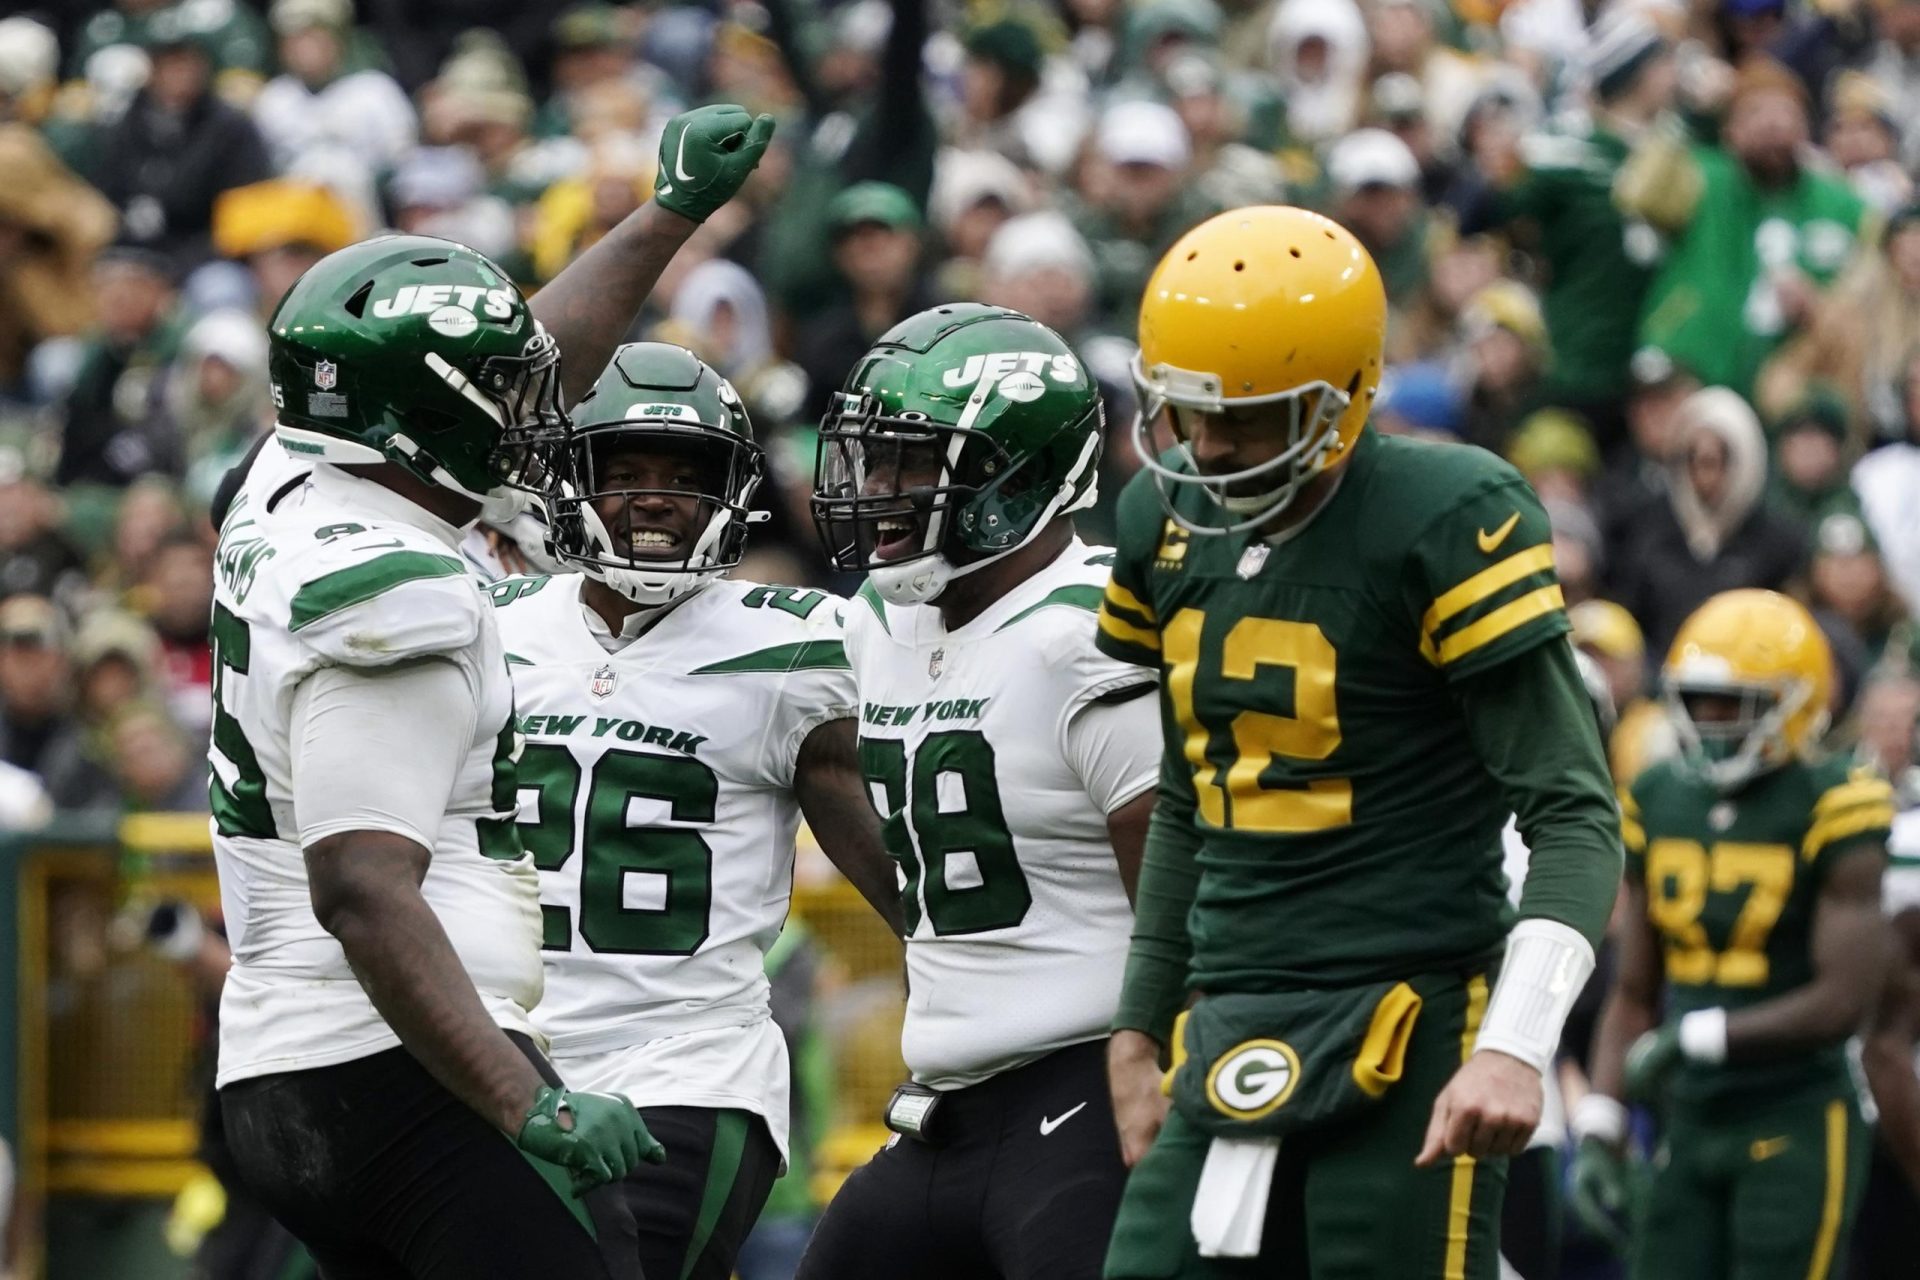 Jets continúan creciendo con convincente victoria 27-10 en Green Bay